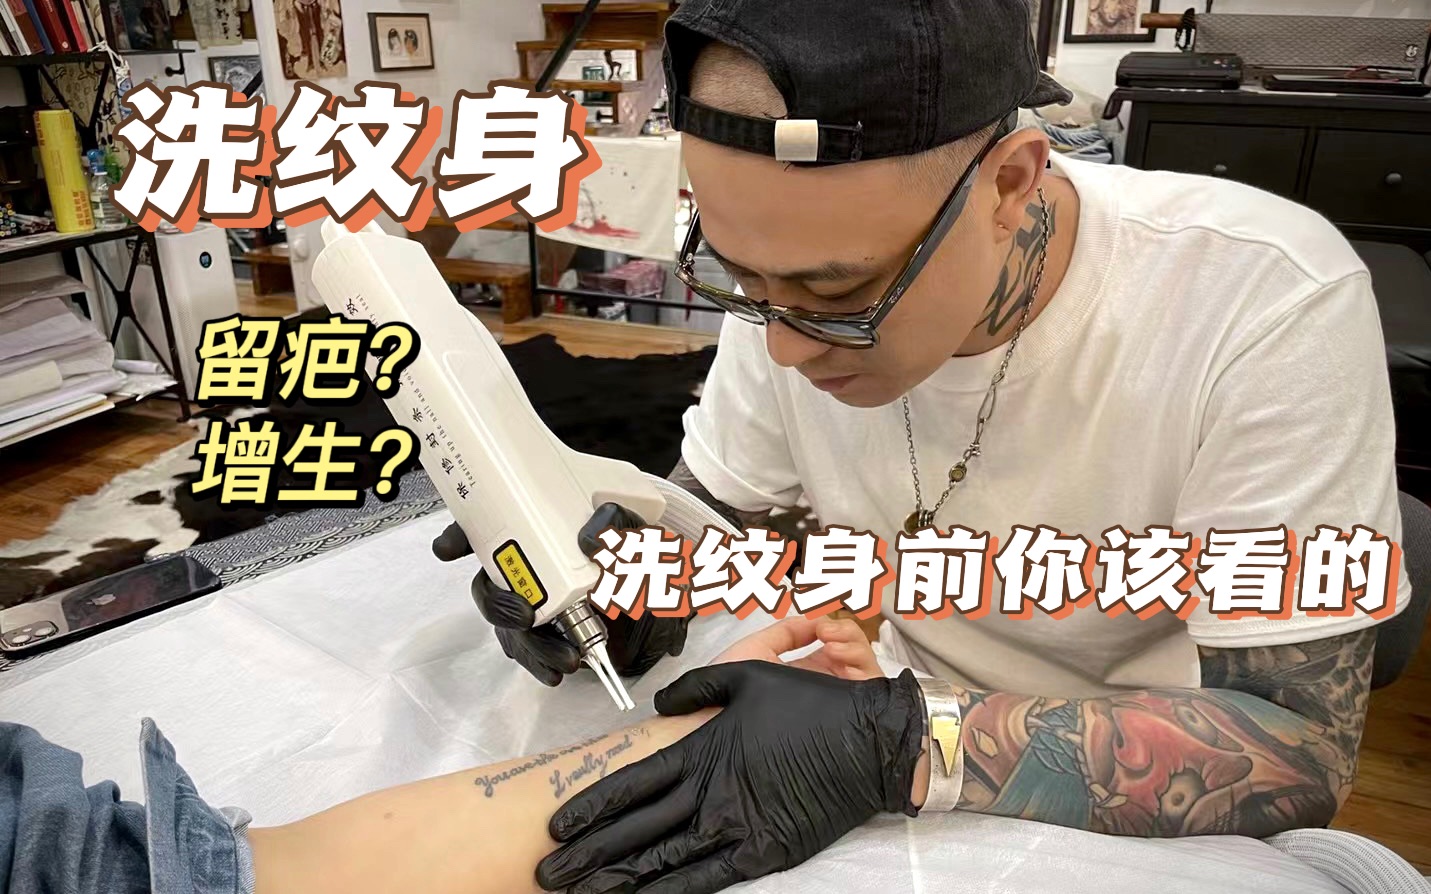 上海纹身师-你该知道的 《关于洗纹身》